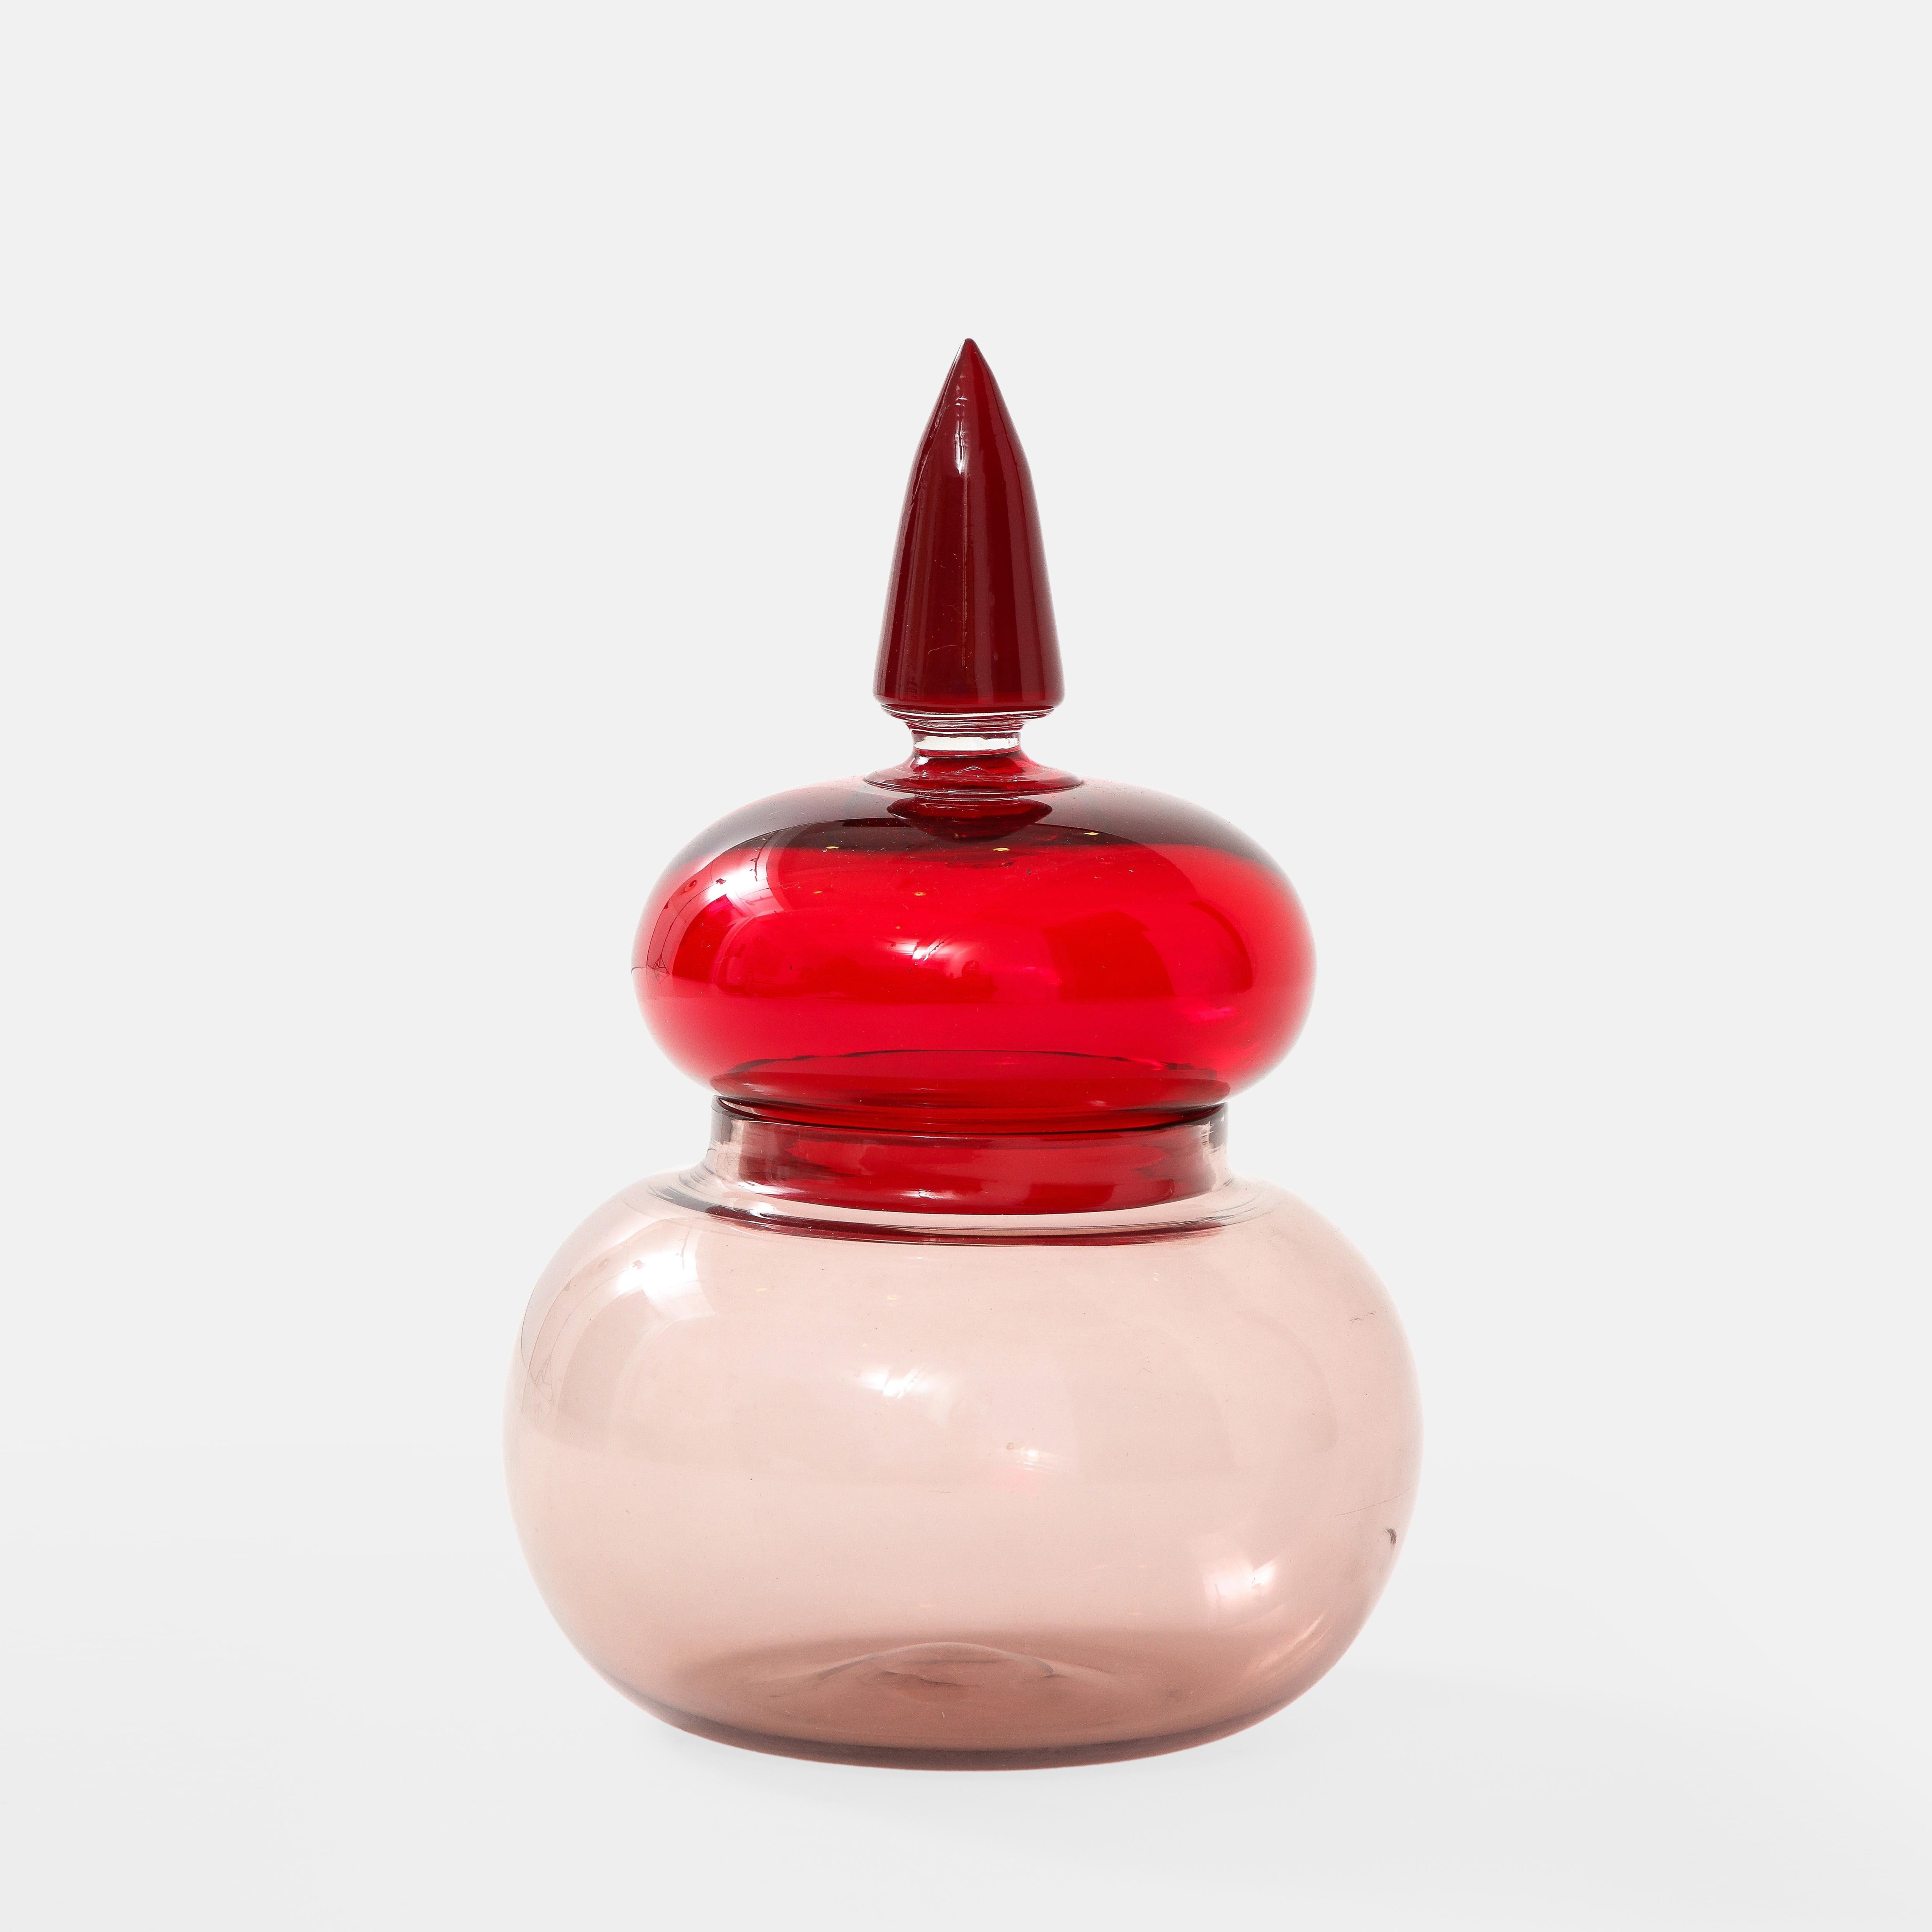 Paolo Venini für Venini seltenes Apothekergefäß aus mundgeblasenem rotem und malvenfarbenem Glas.  Dieses klassische und elegante Gefäß stammt aus einer 1959 von Paolo Venini entworfenen Serie, die von Apothekergefäßen aus dem 19. Jahrhundert